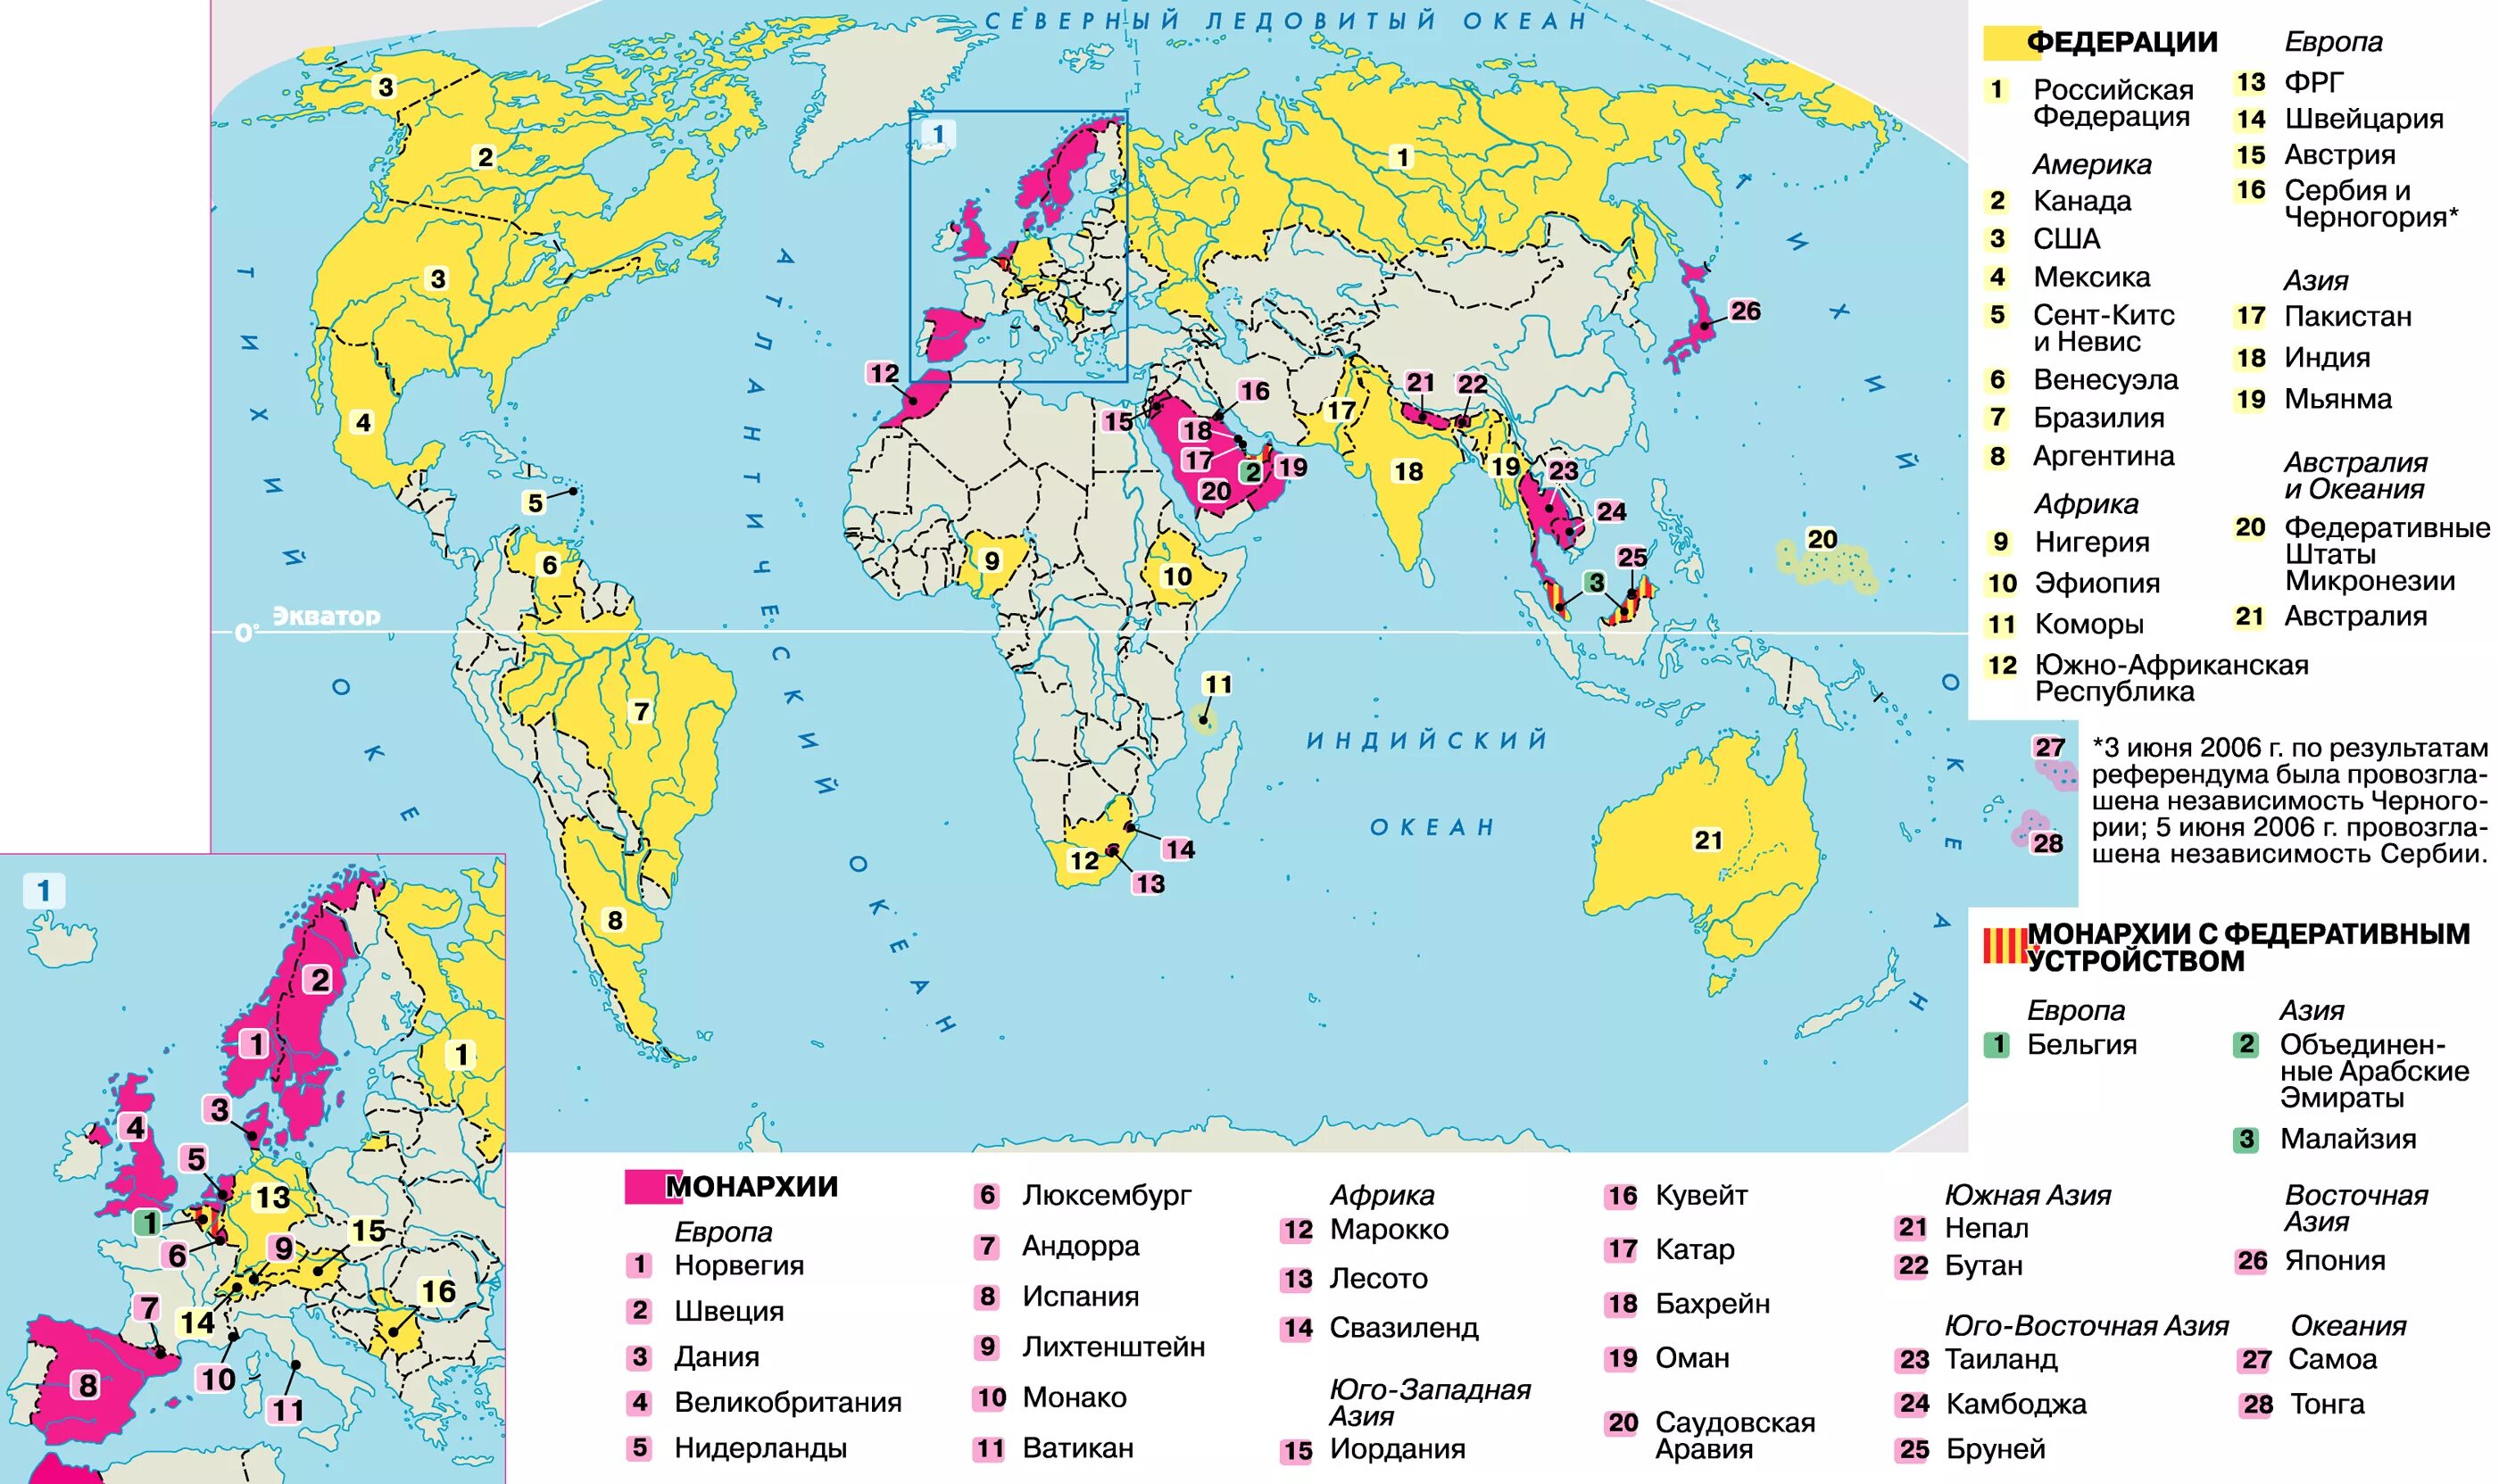 Страны с монархической формой правления политическая карта. Страны с ыелеративной ыориоц правления.